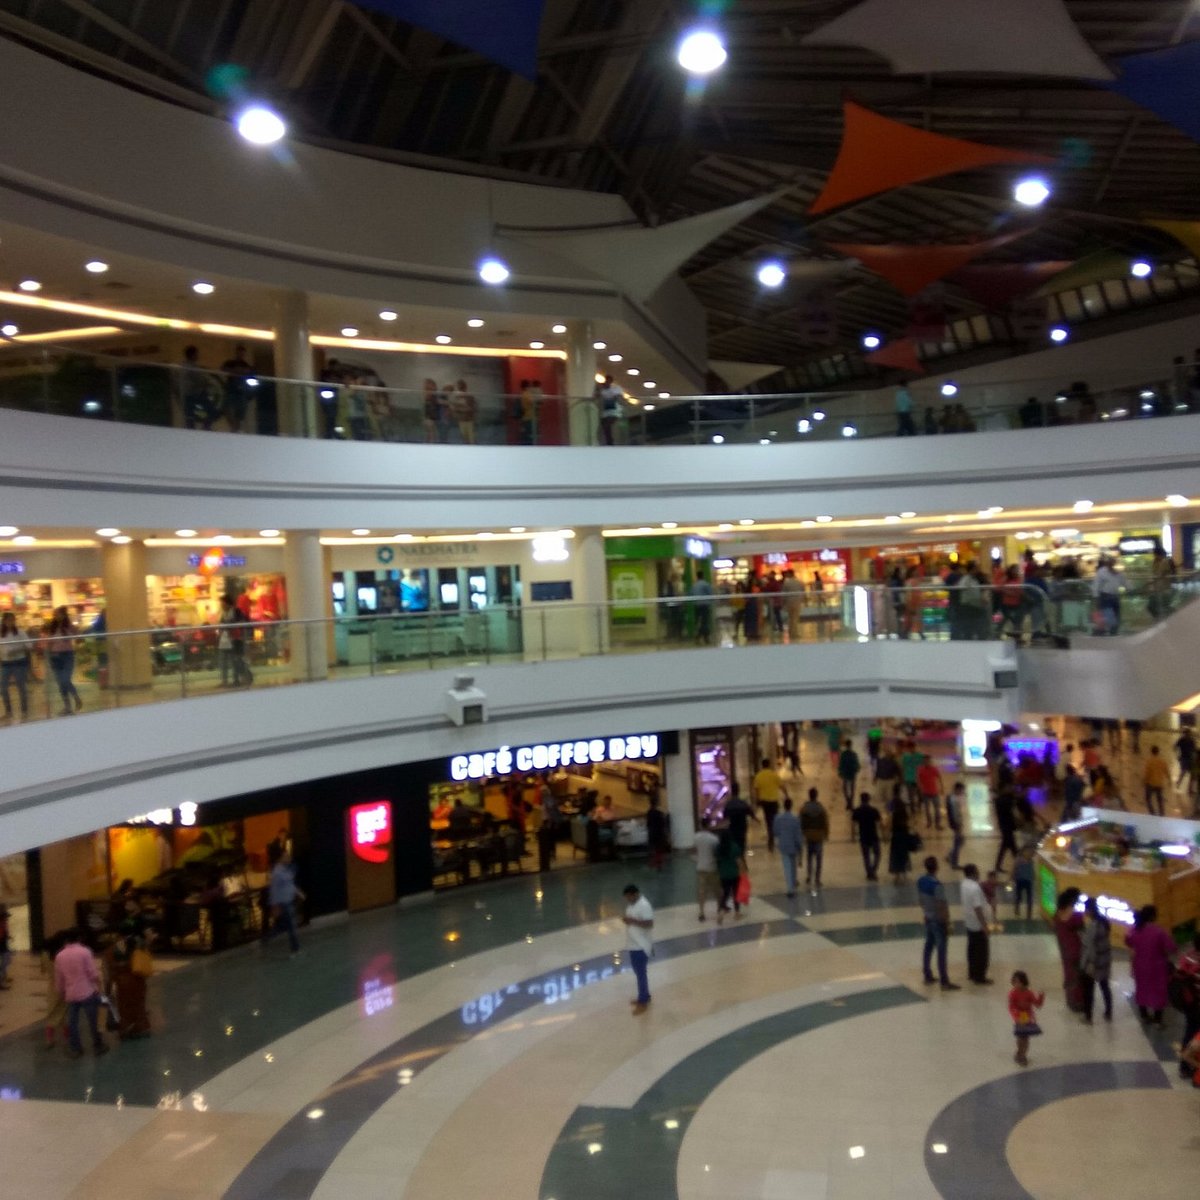 Inorbit Mall